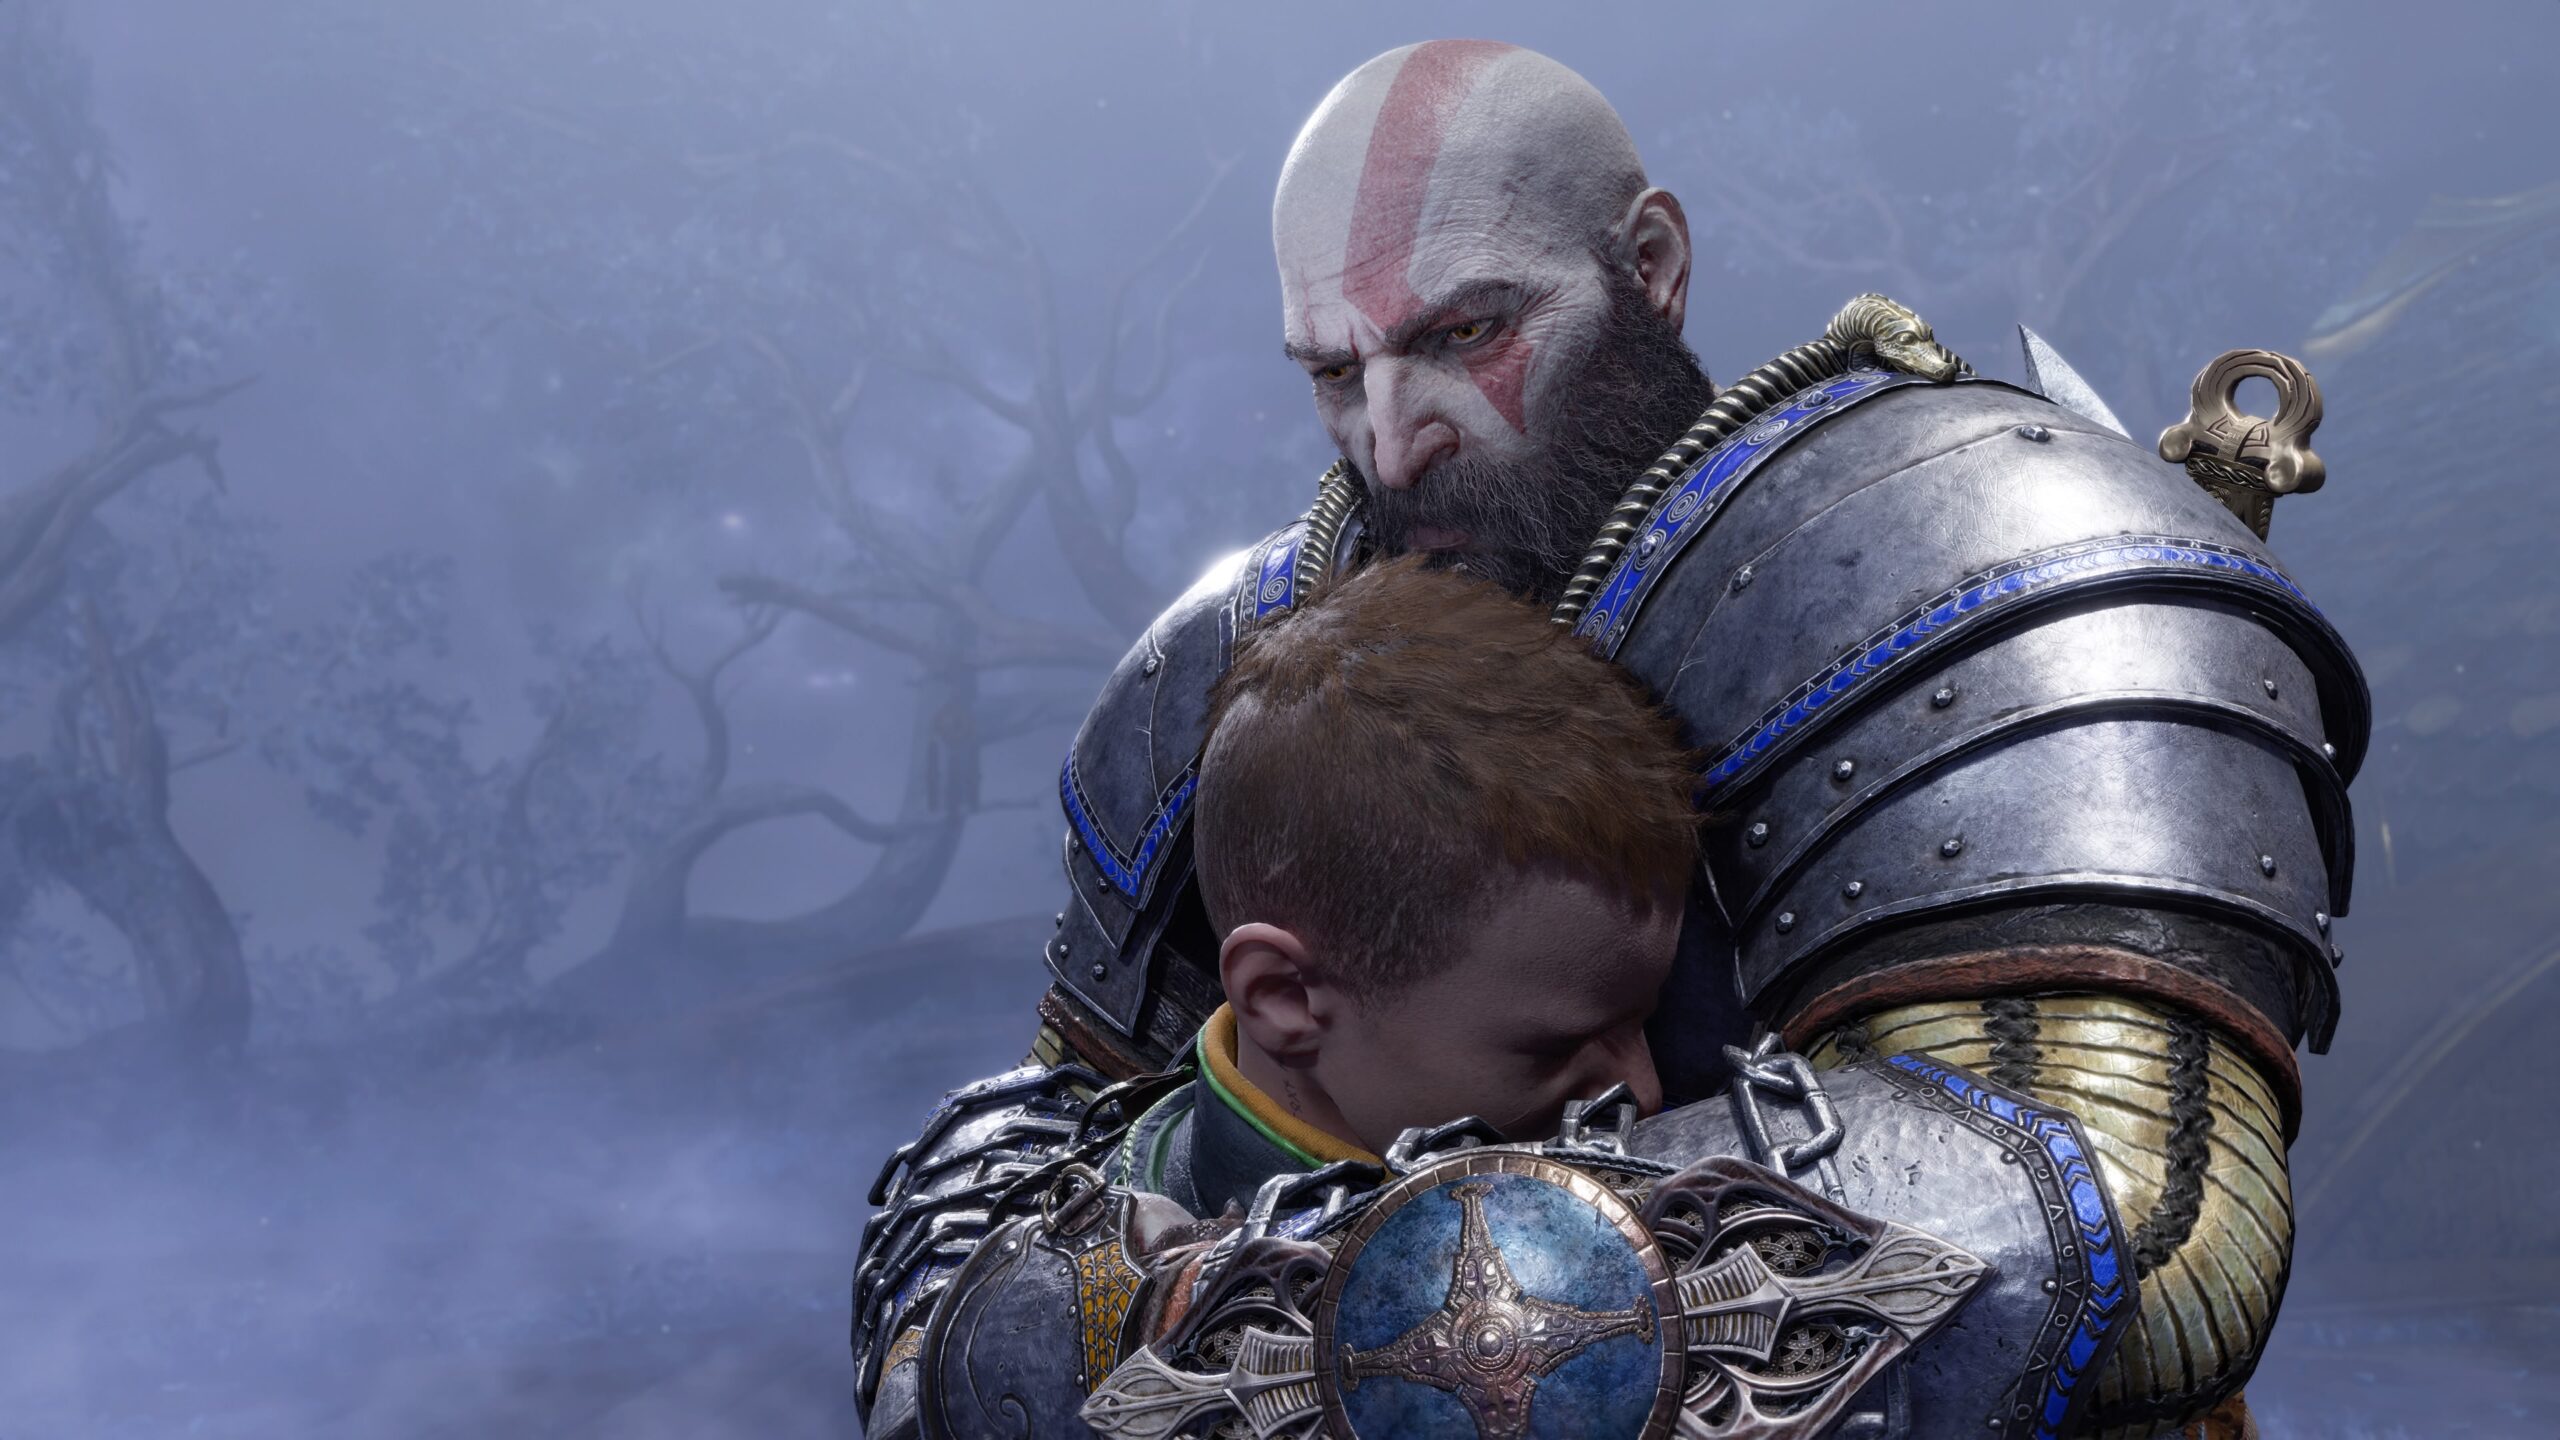 #Zu weich und reif: Schöpfer von God of War kritisiert die Entwicklung von Protagonist Kratos